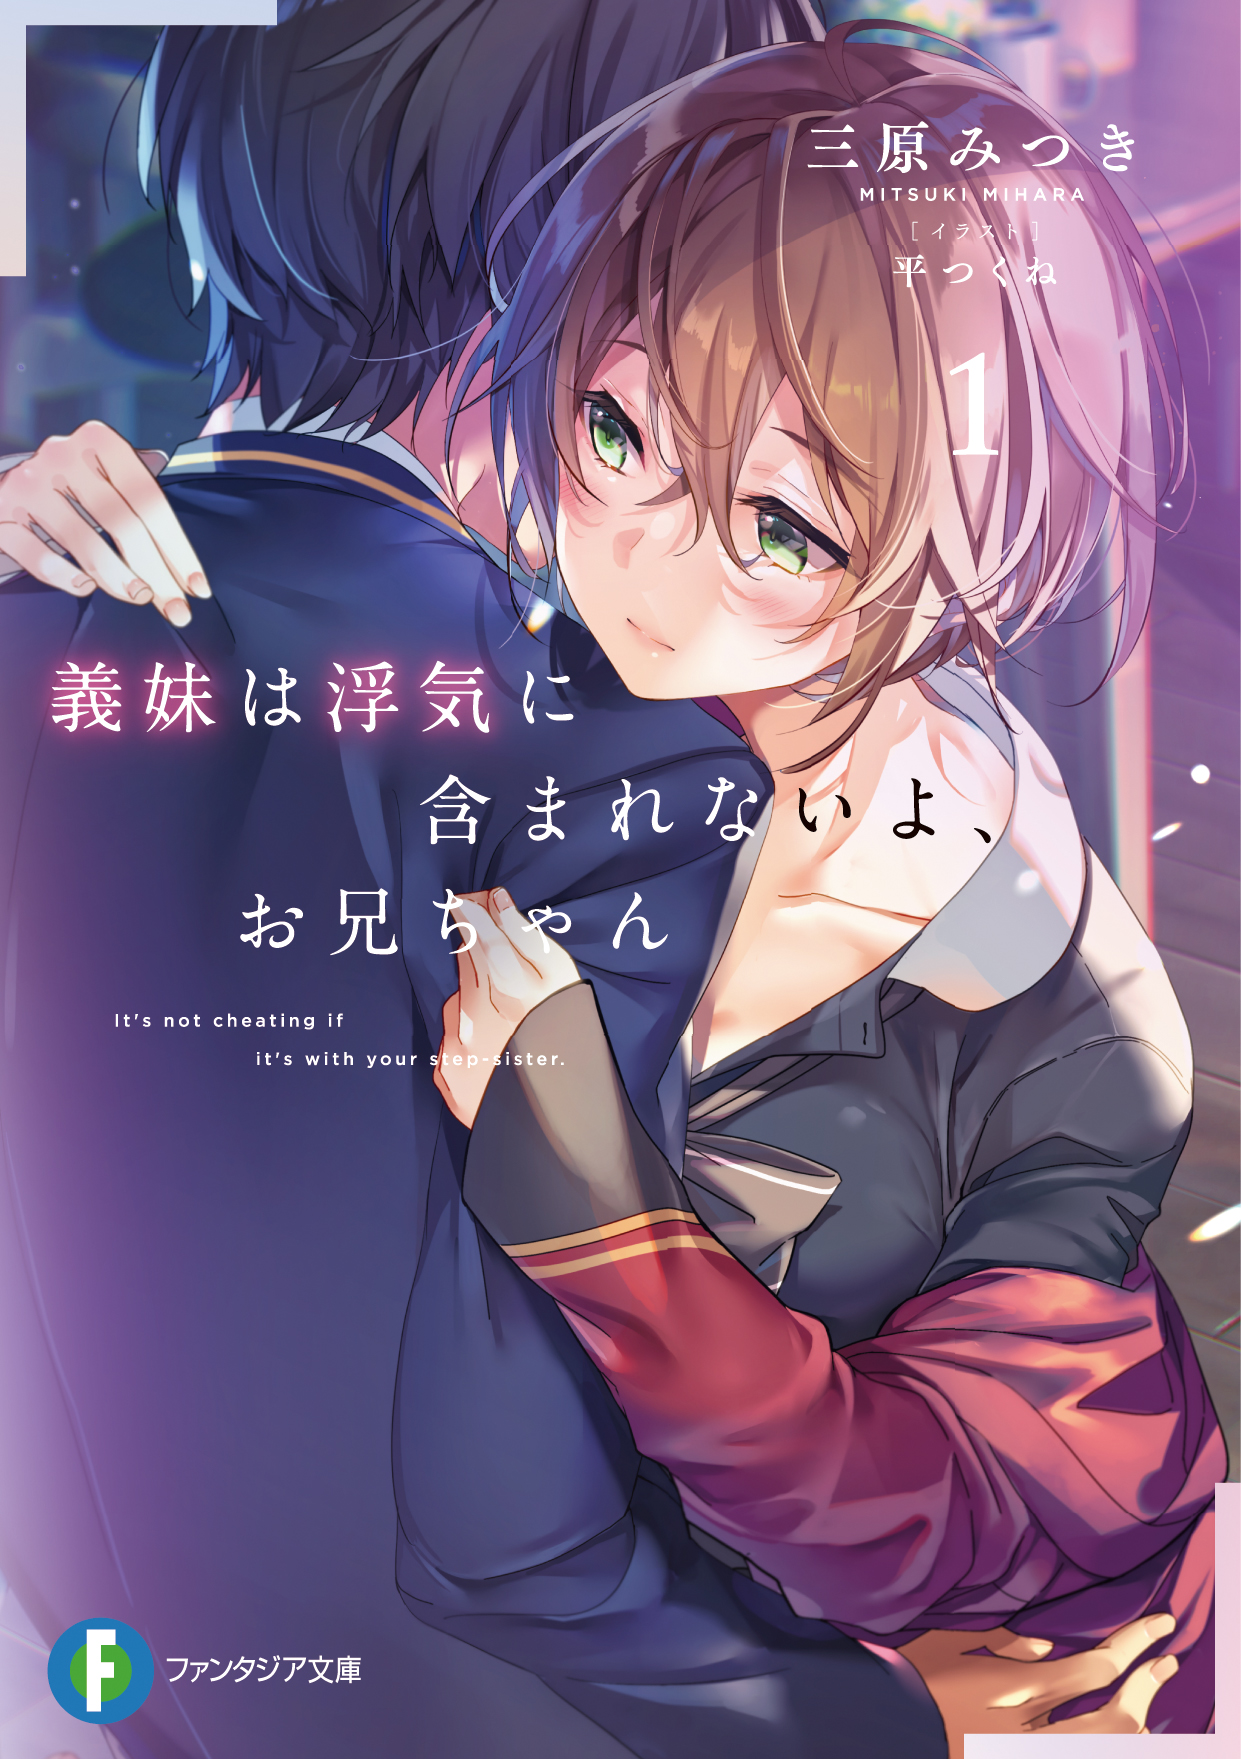 Imouto wa Uwaki ni Fukumarenai yo light novel volume 1 cover